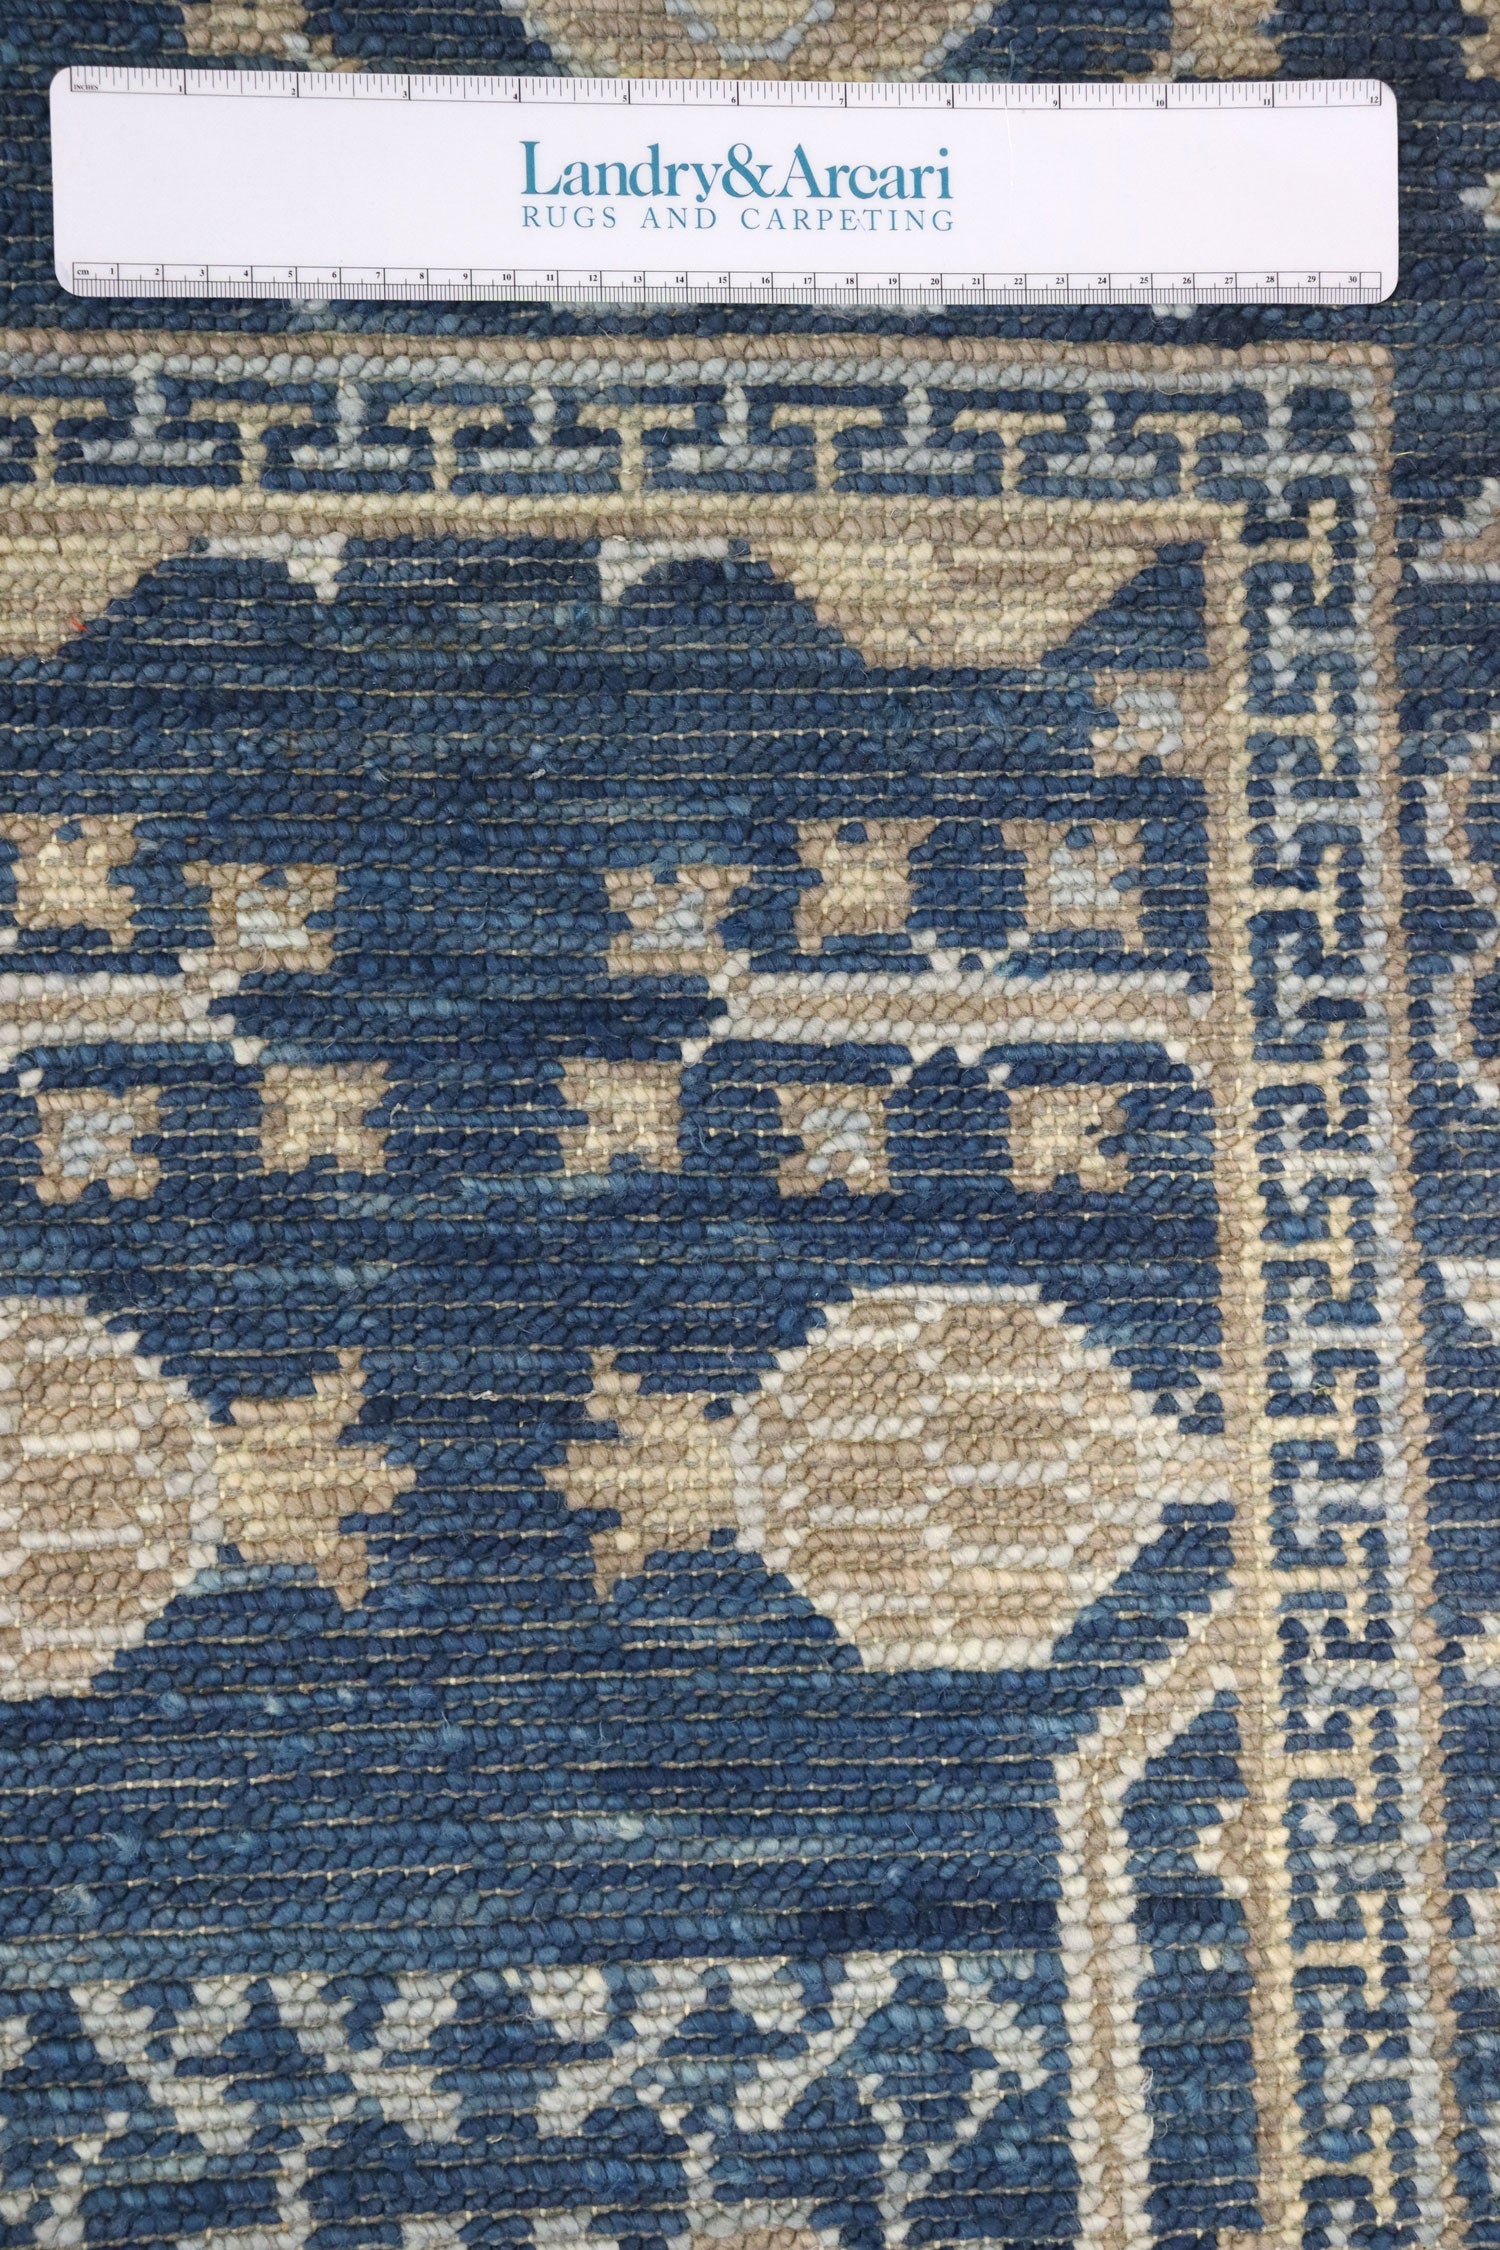 Khotan Handwoven Traditional Rug, J65691